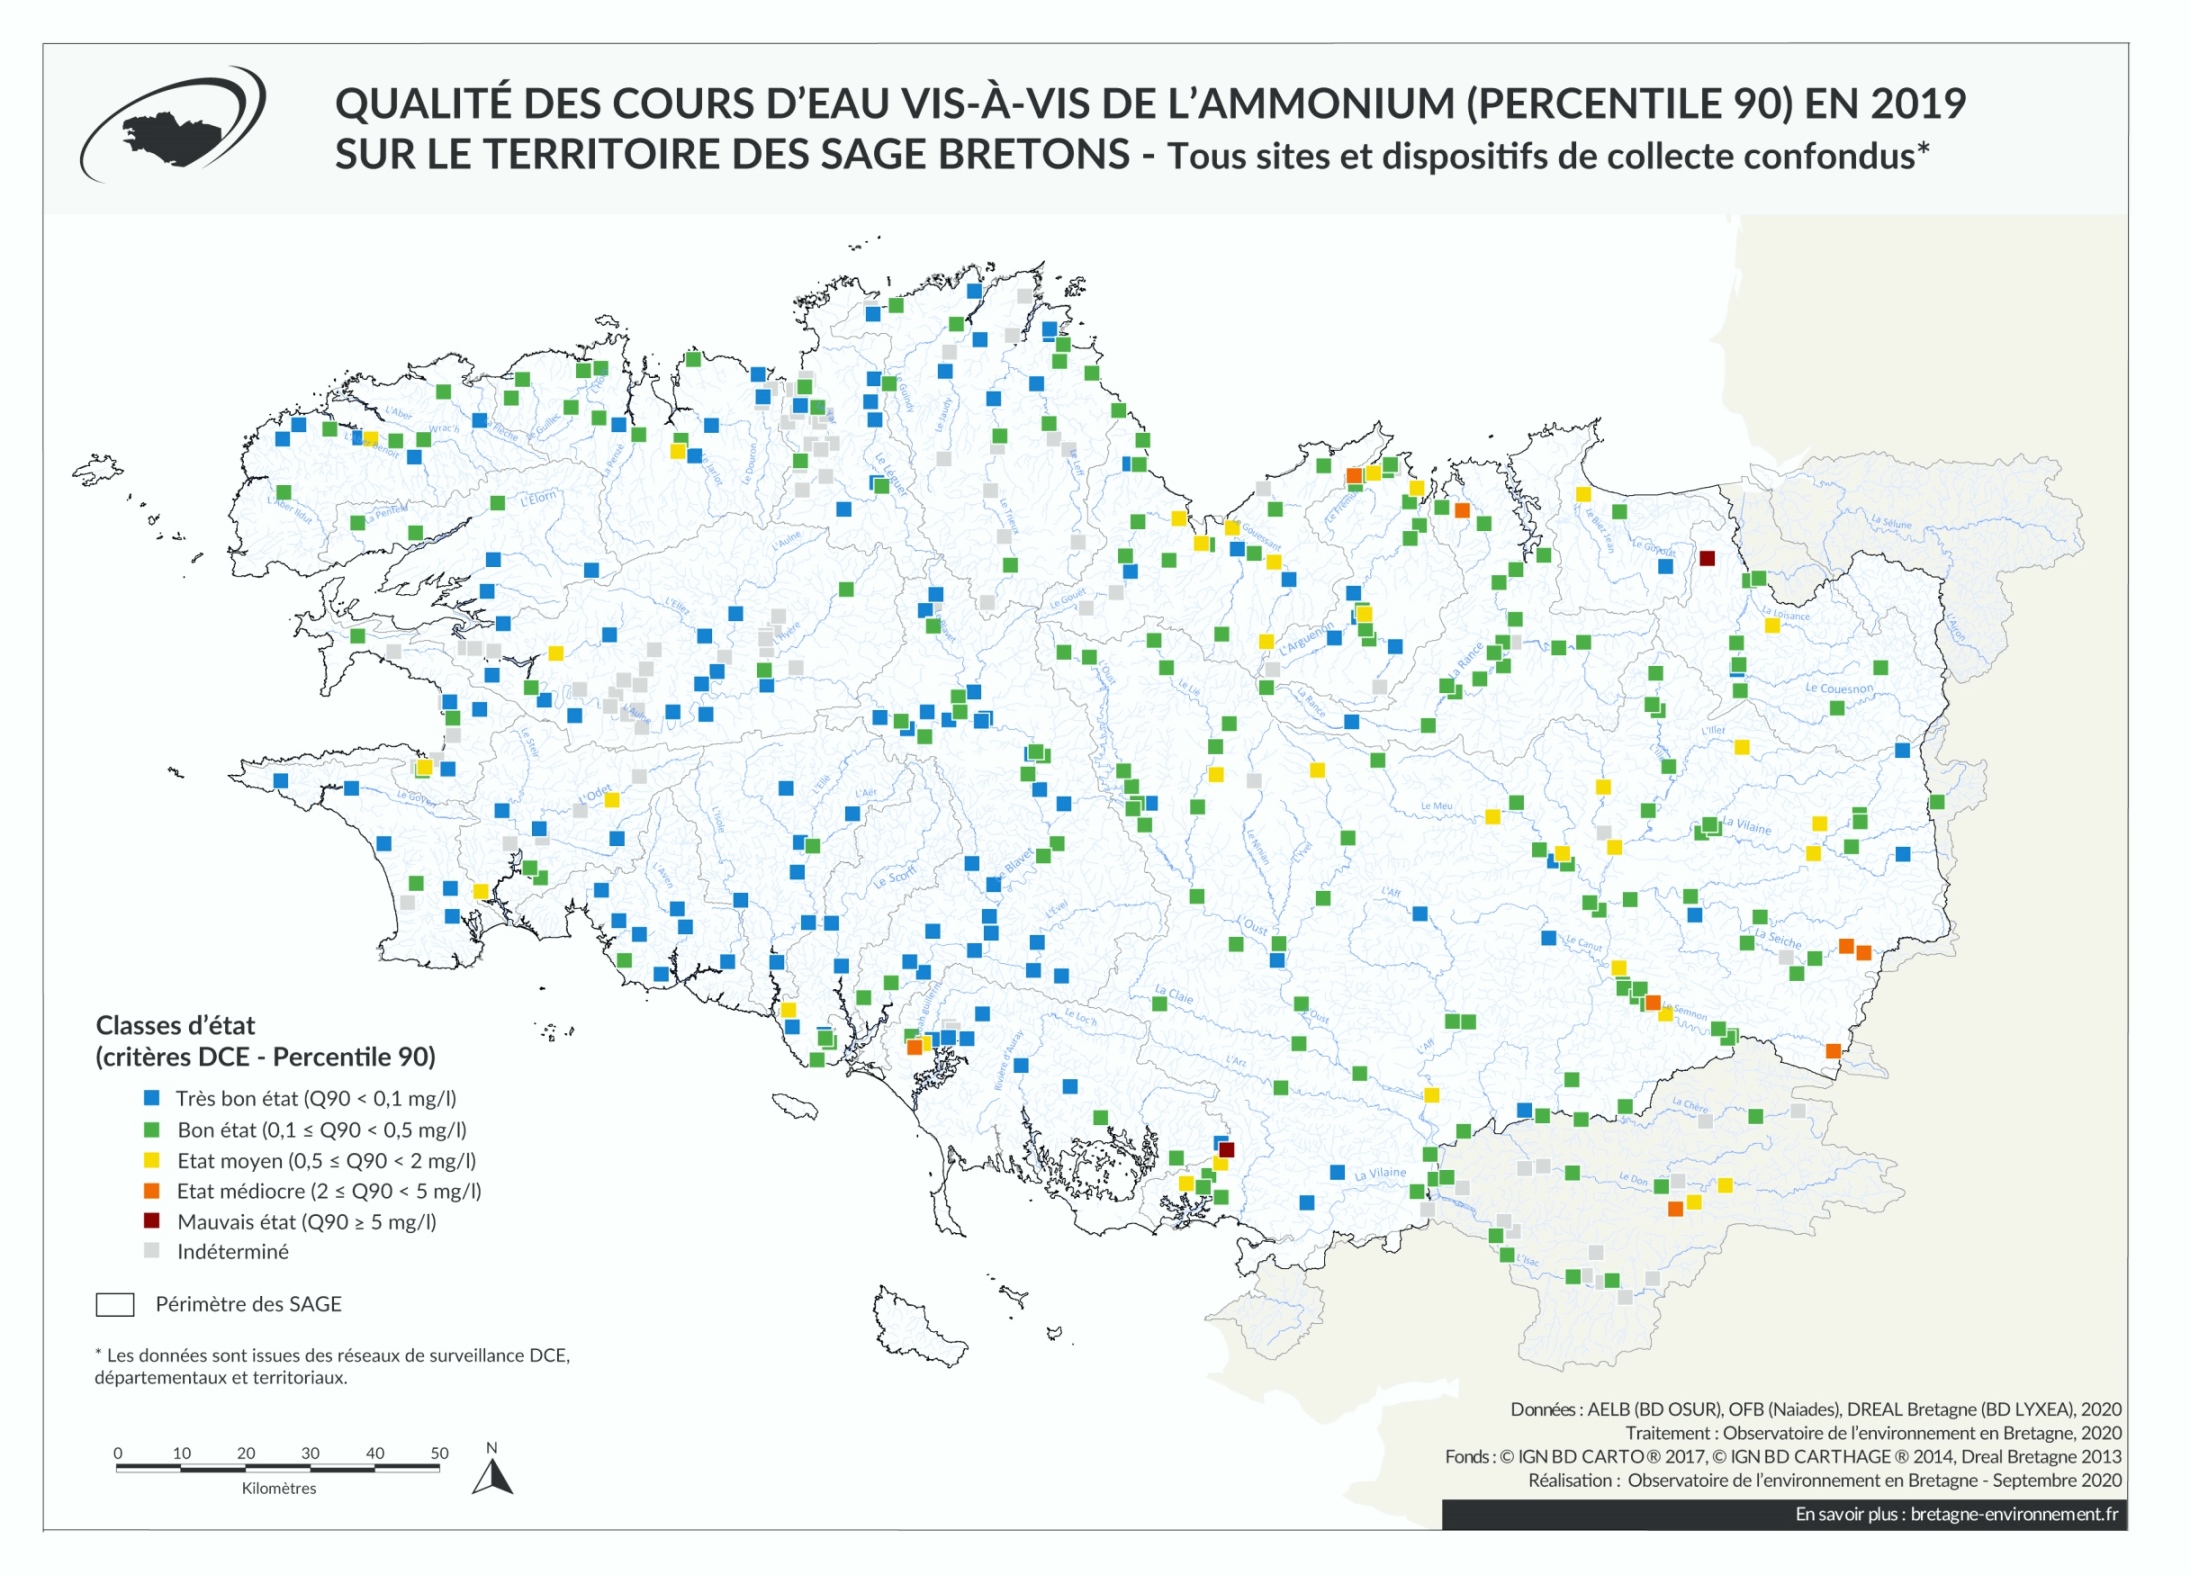 Qualité des cours d'eau bretons vis-à-vis de l'ammonium (Q90) en 2019